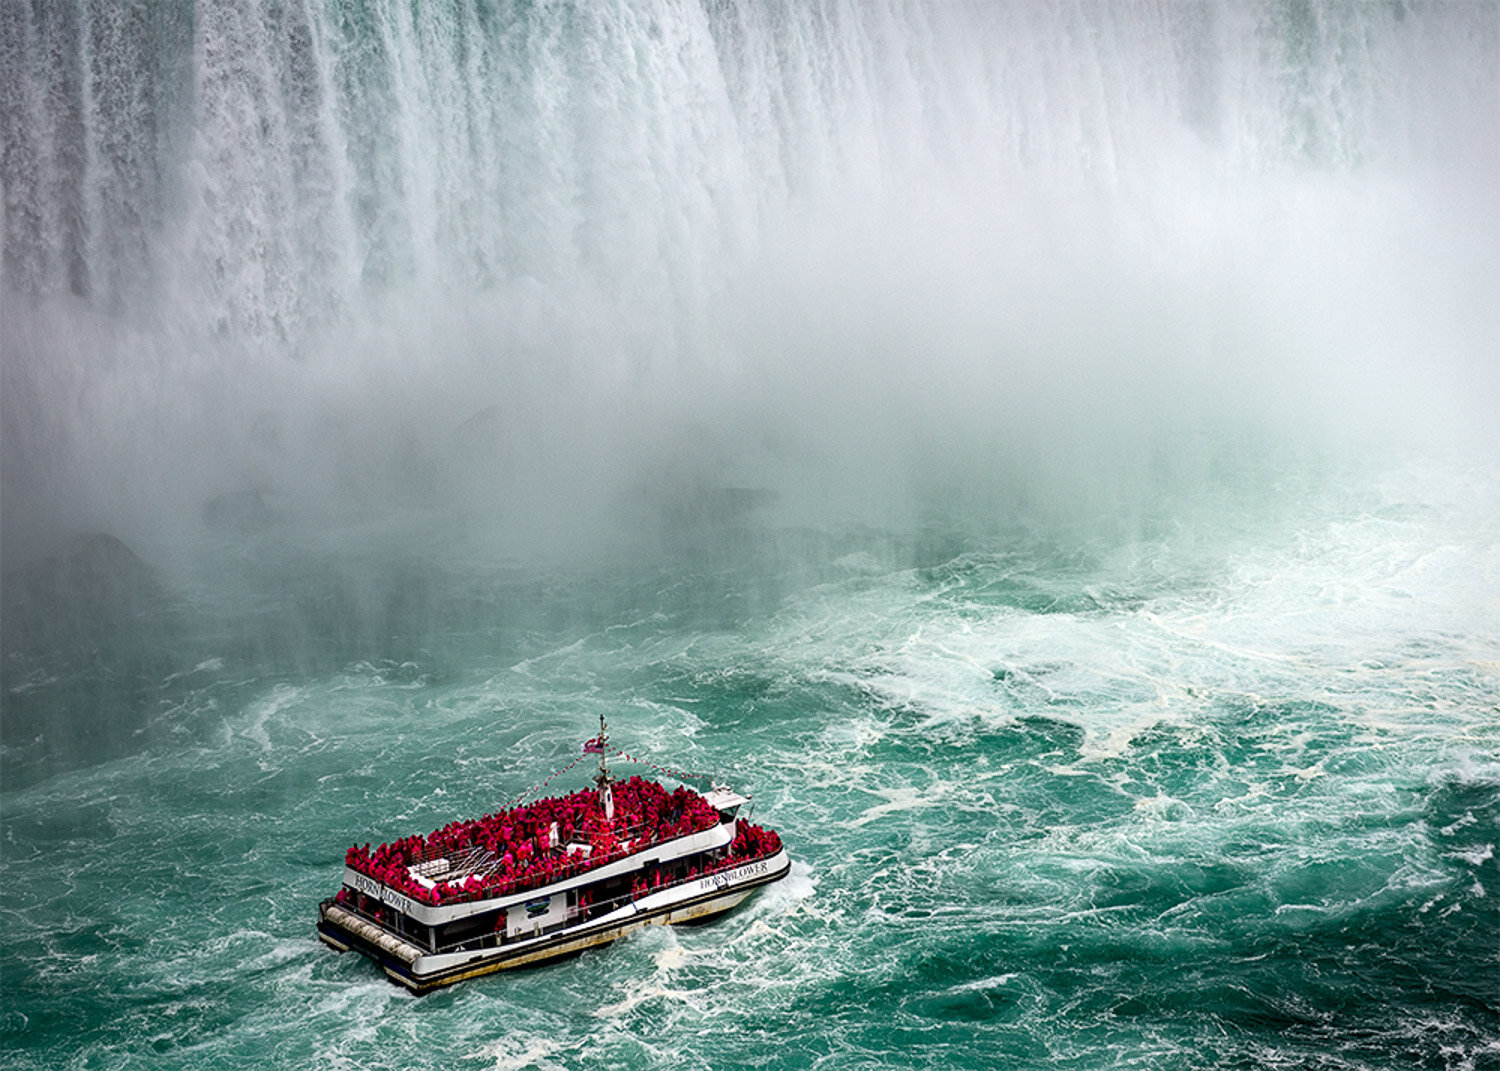 Hornblower at Horseshoe Falls, Niagara Falls, Ontario, Canada